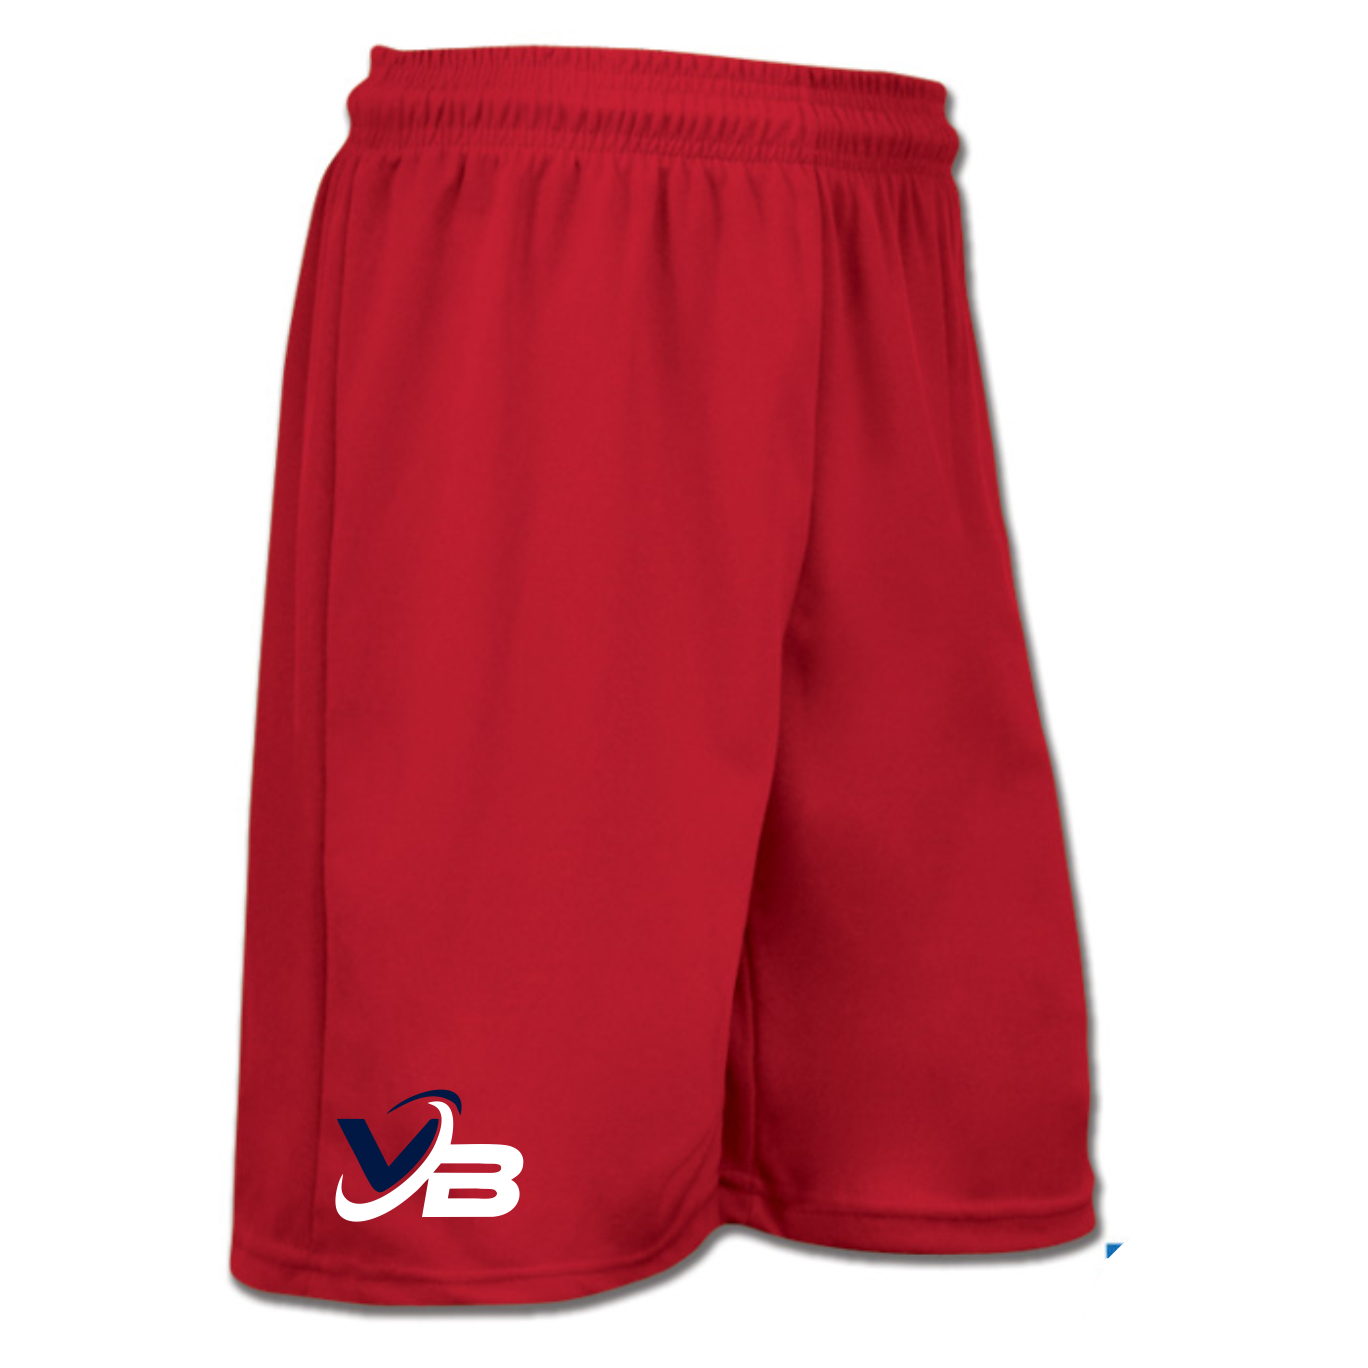 VB Shorts